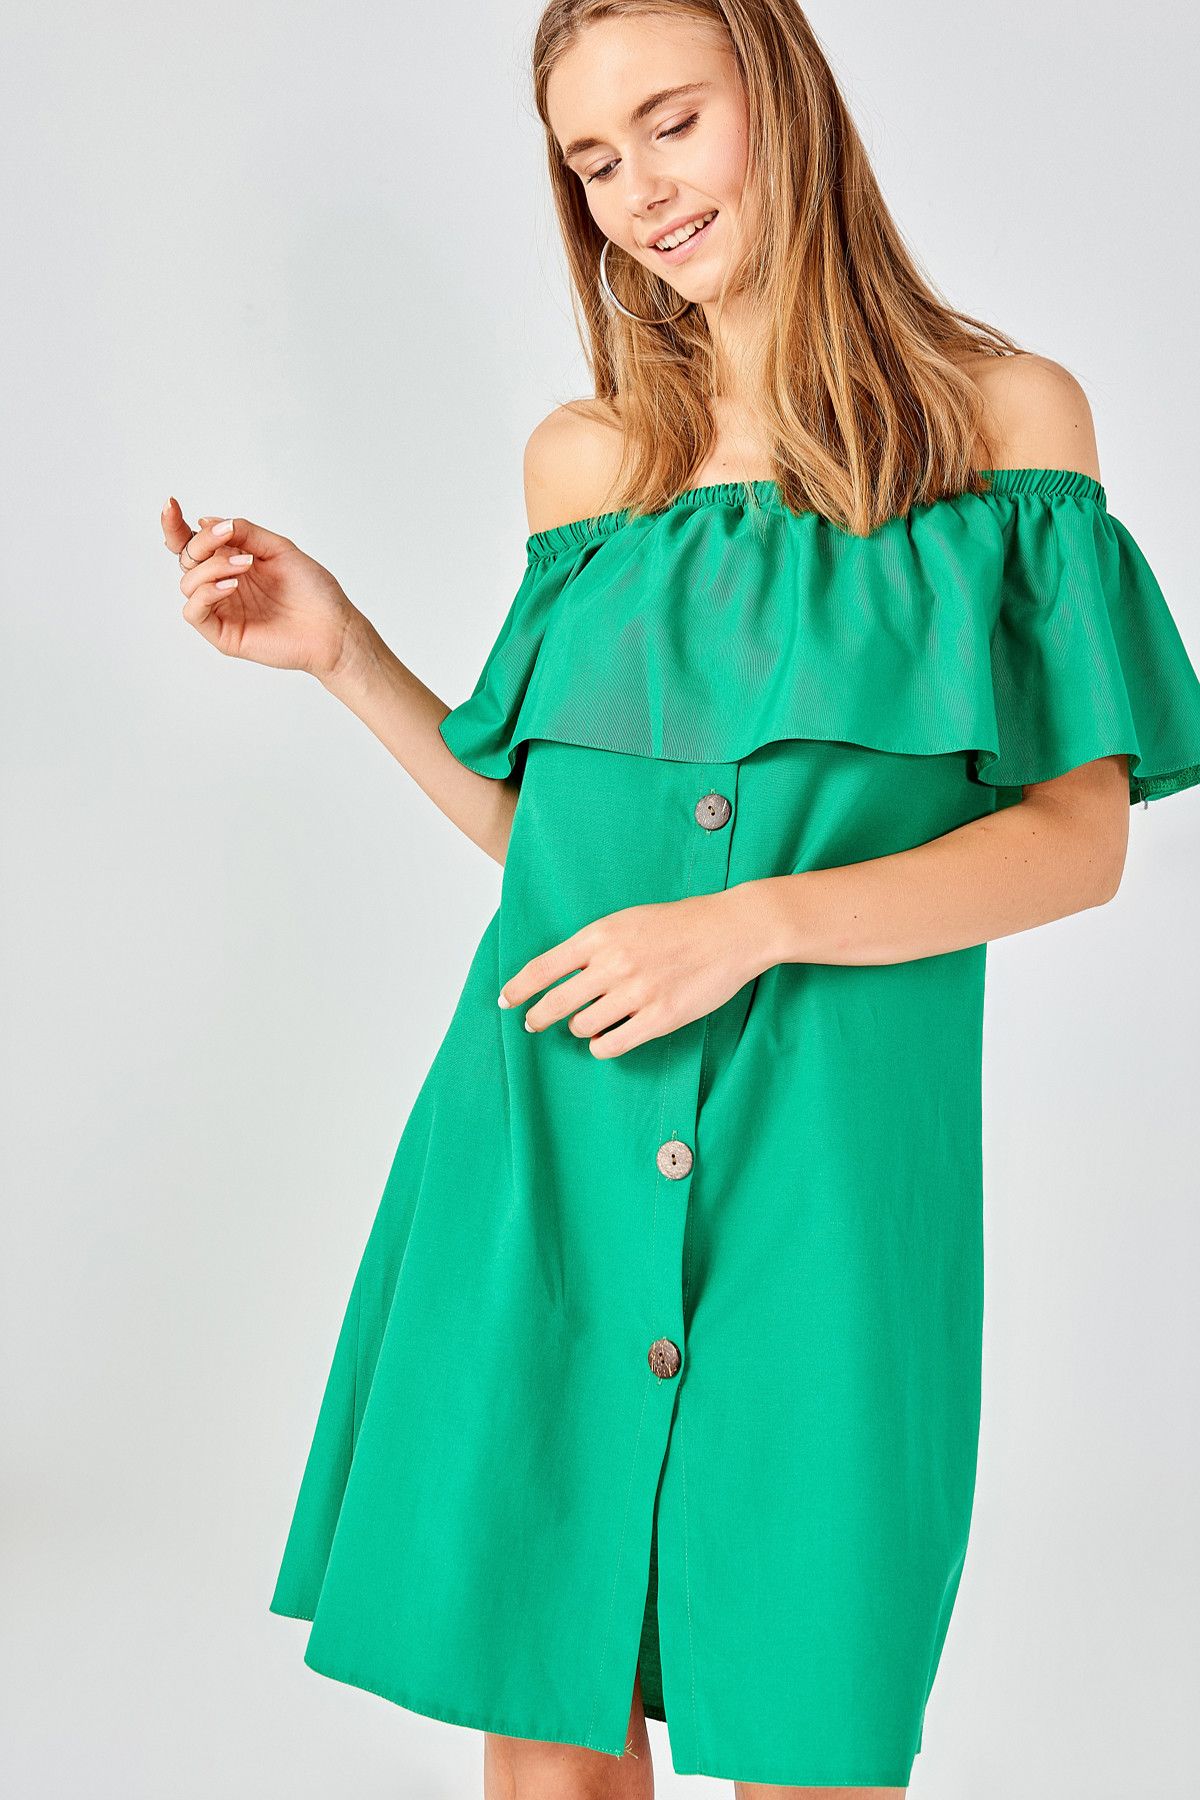 Boutiquen Kadın Yeşil Düğmeli Elbise 10949